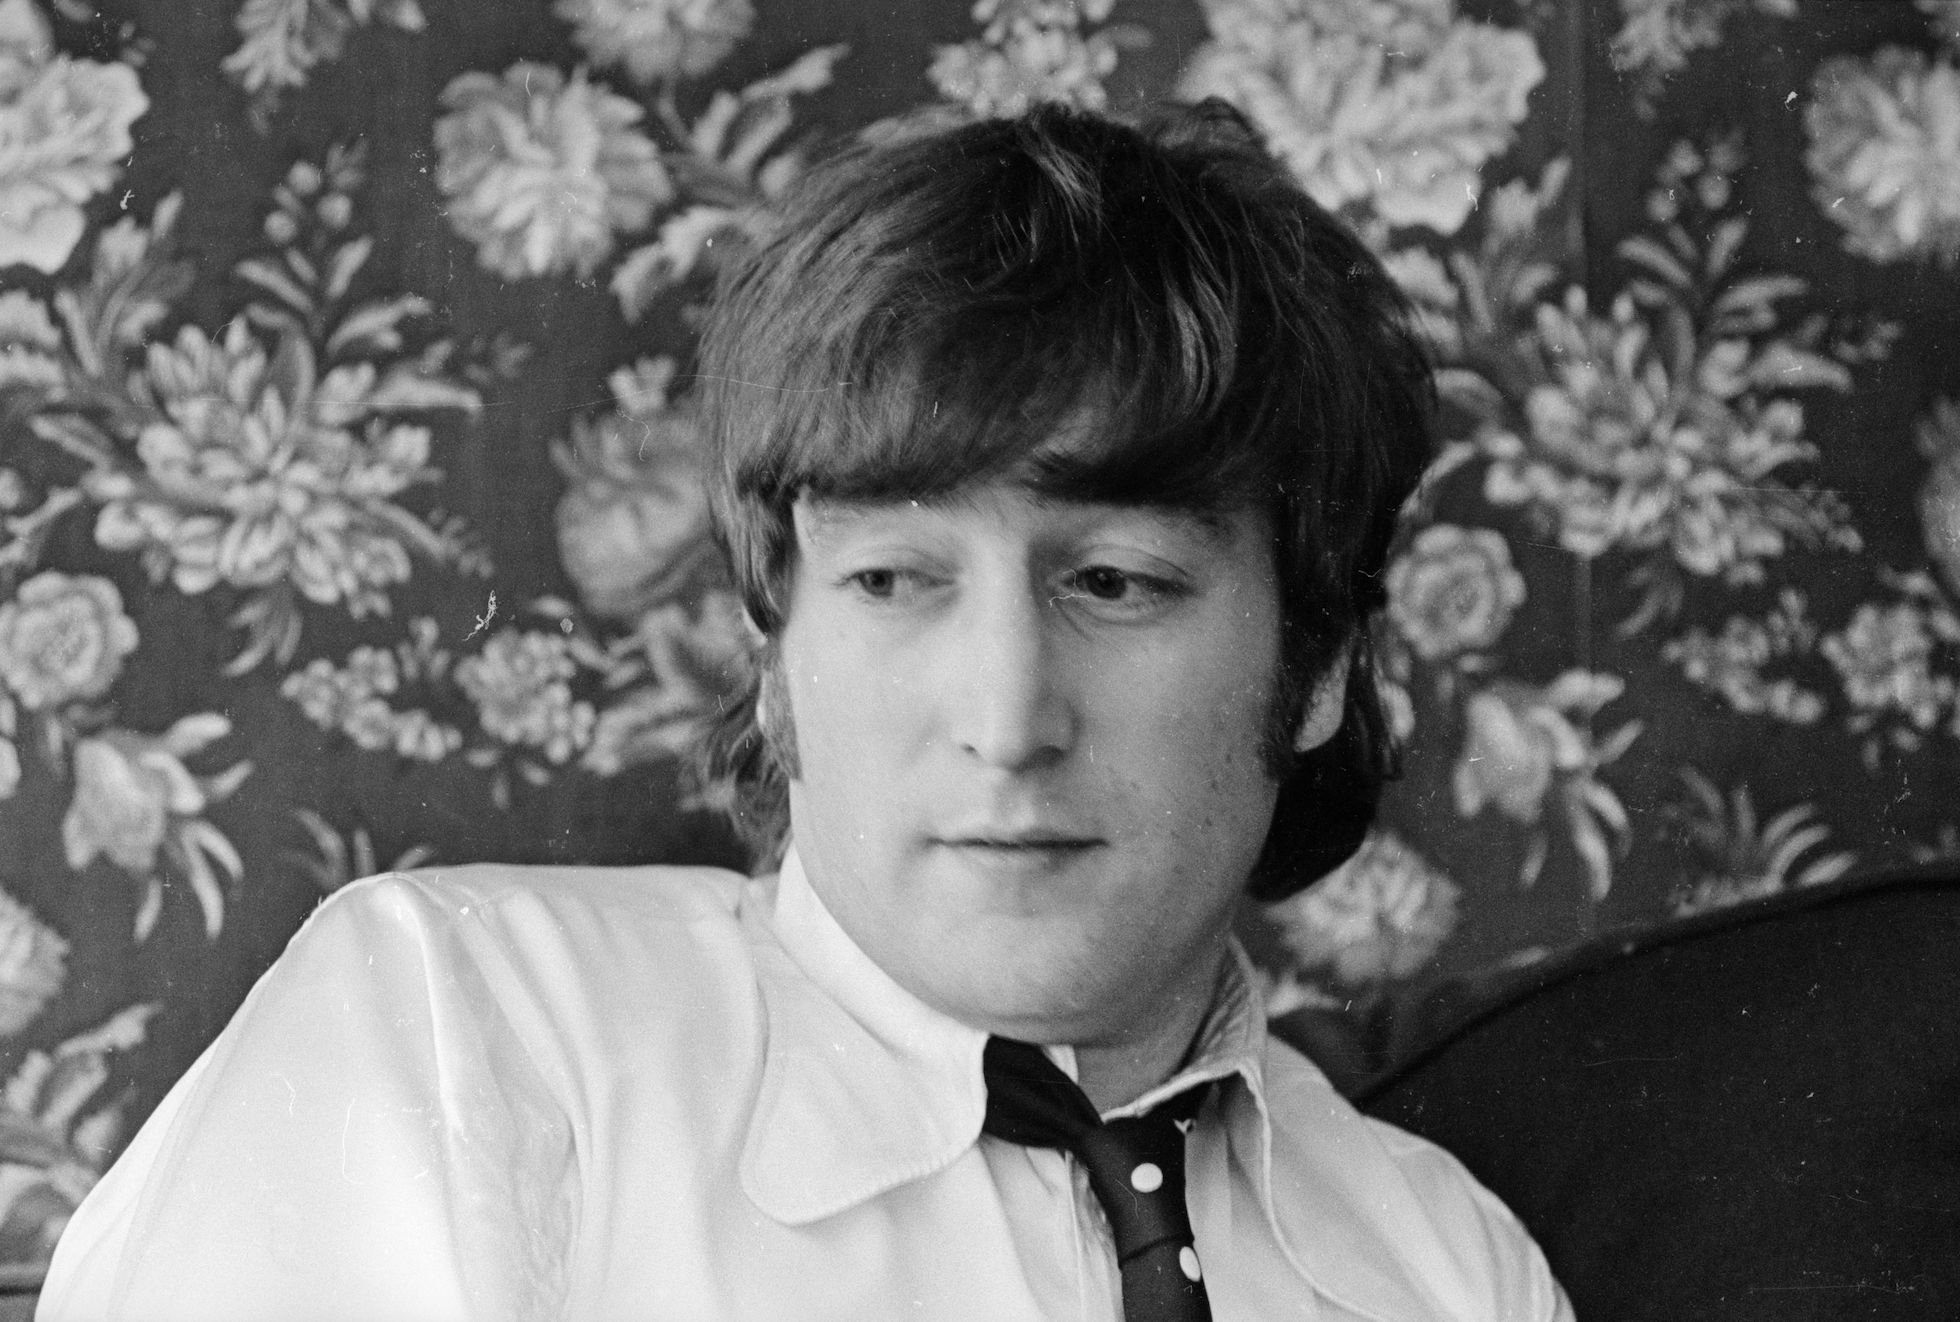 John Lennon of The Beatles in the U.S.